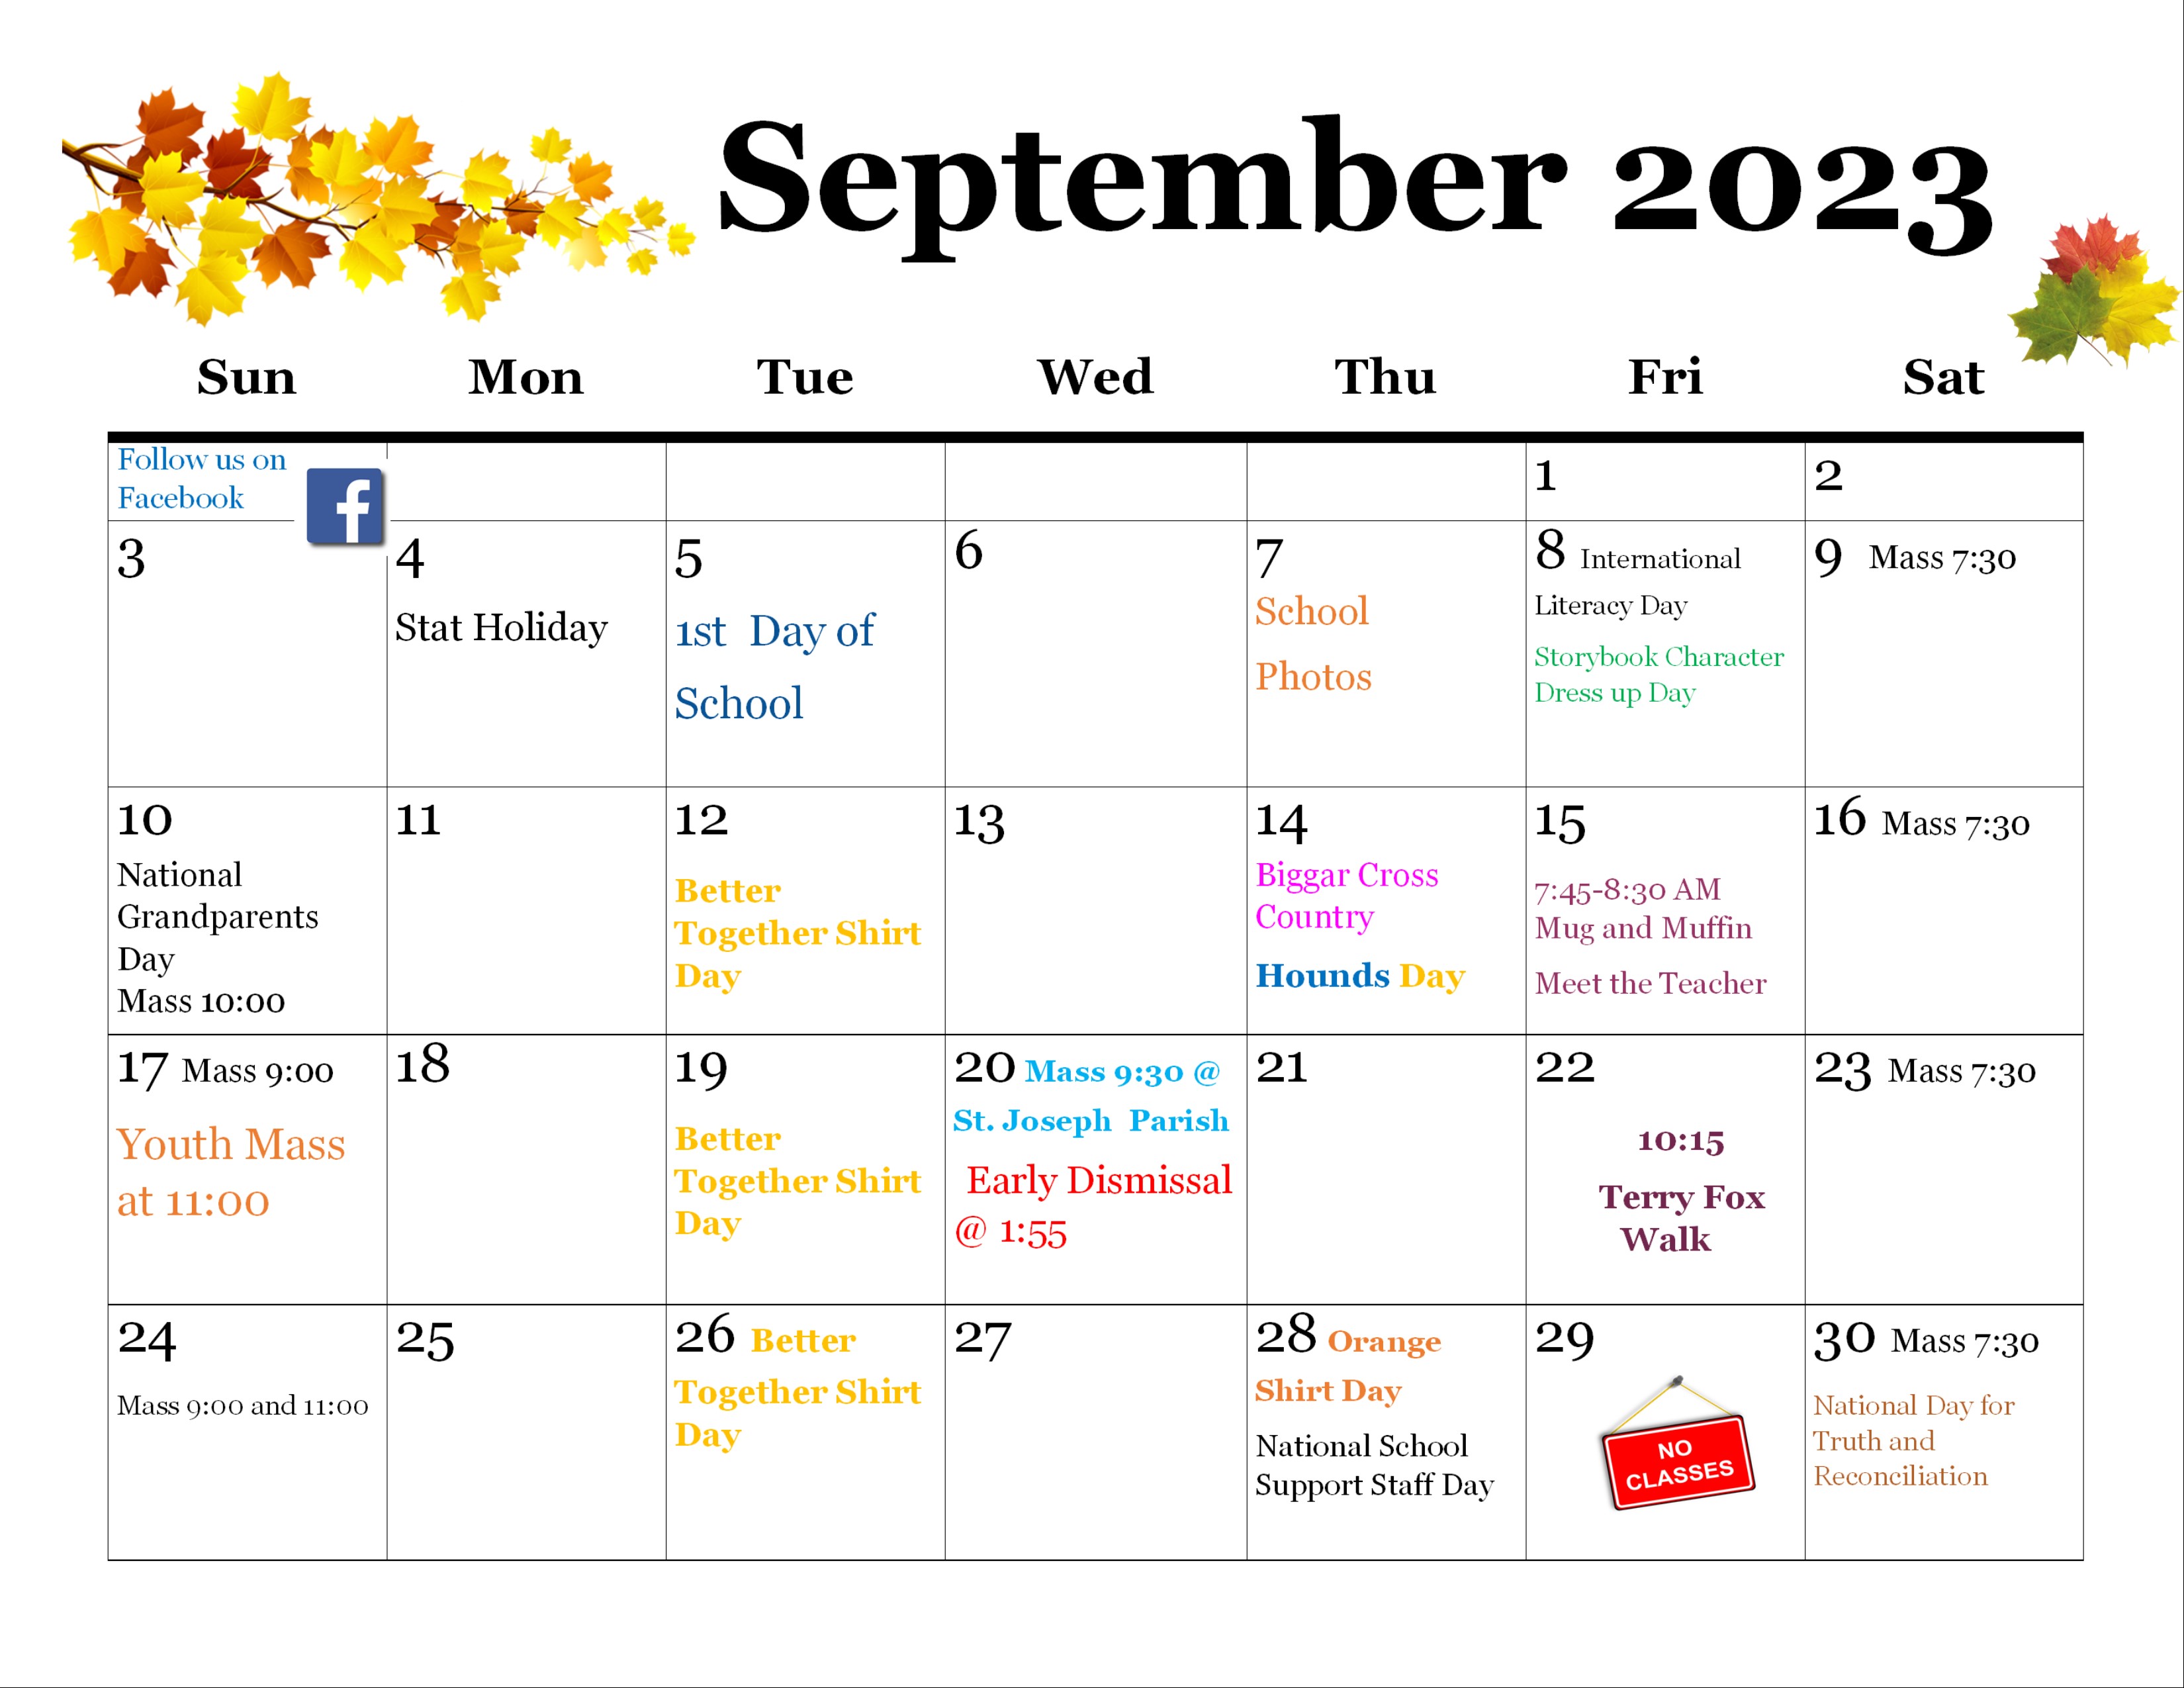 Calendar and newsletter for September